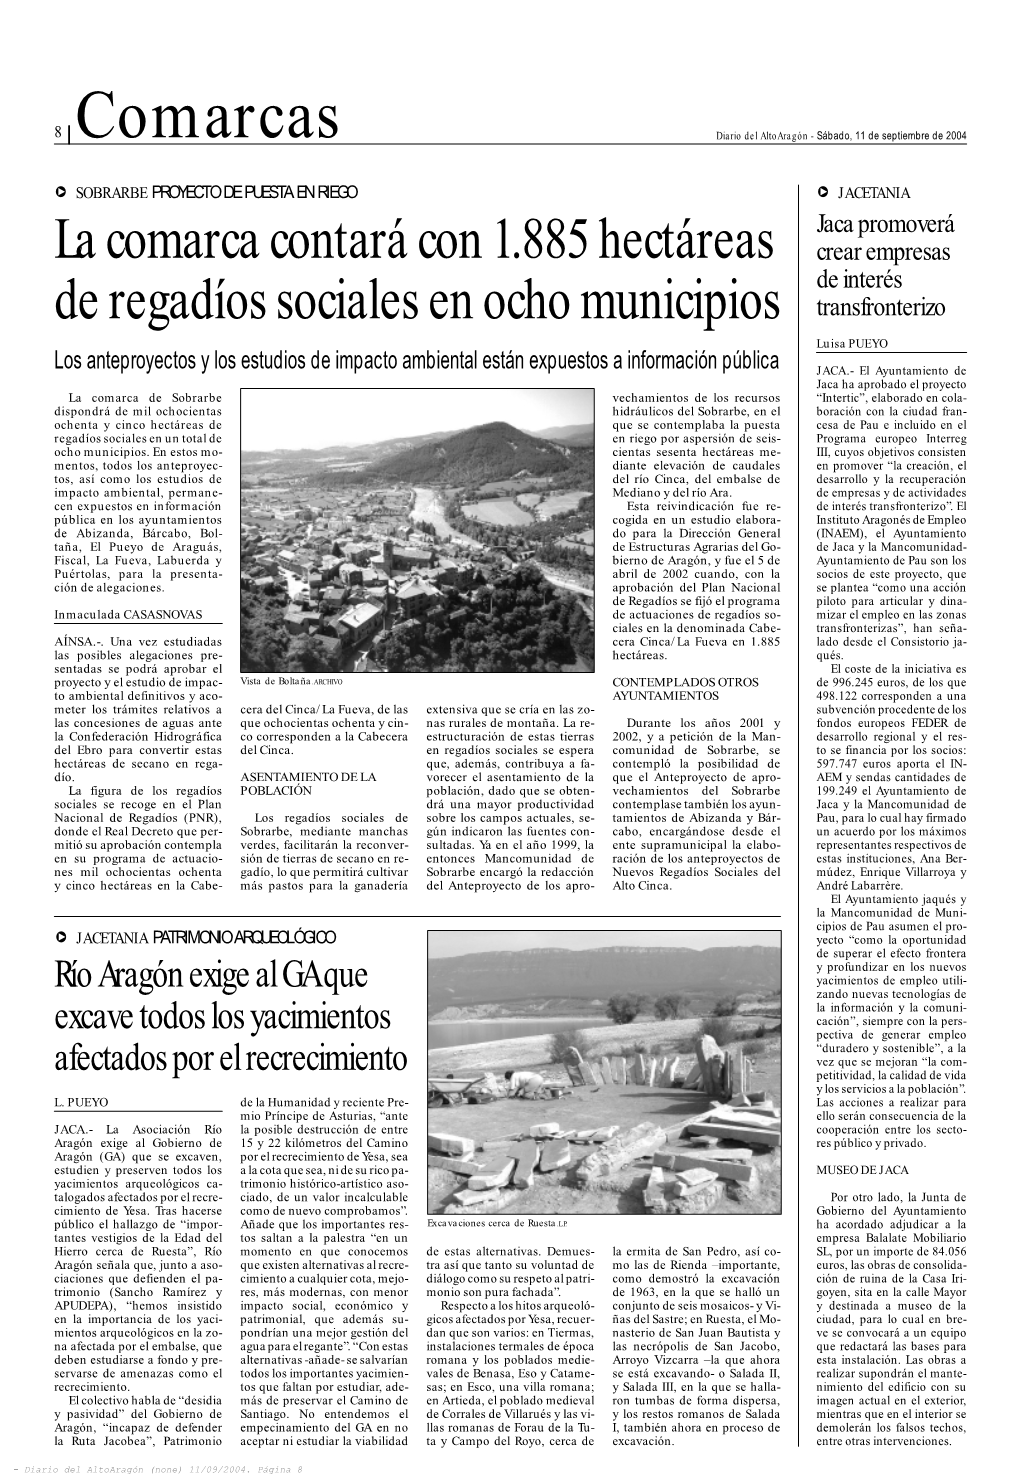 8 | Comarcas Diario Del Altoaragón - Sábado, 11 De Septiembre De 2004